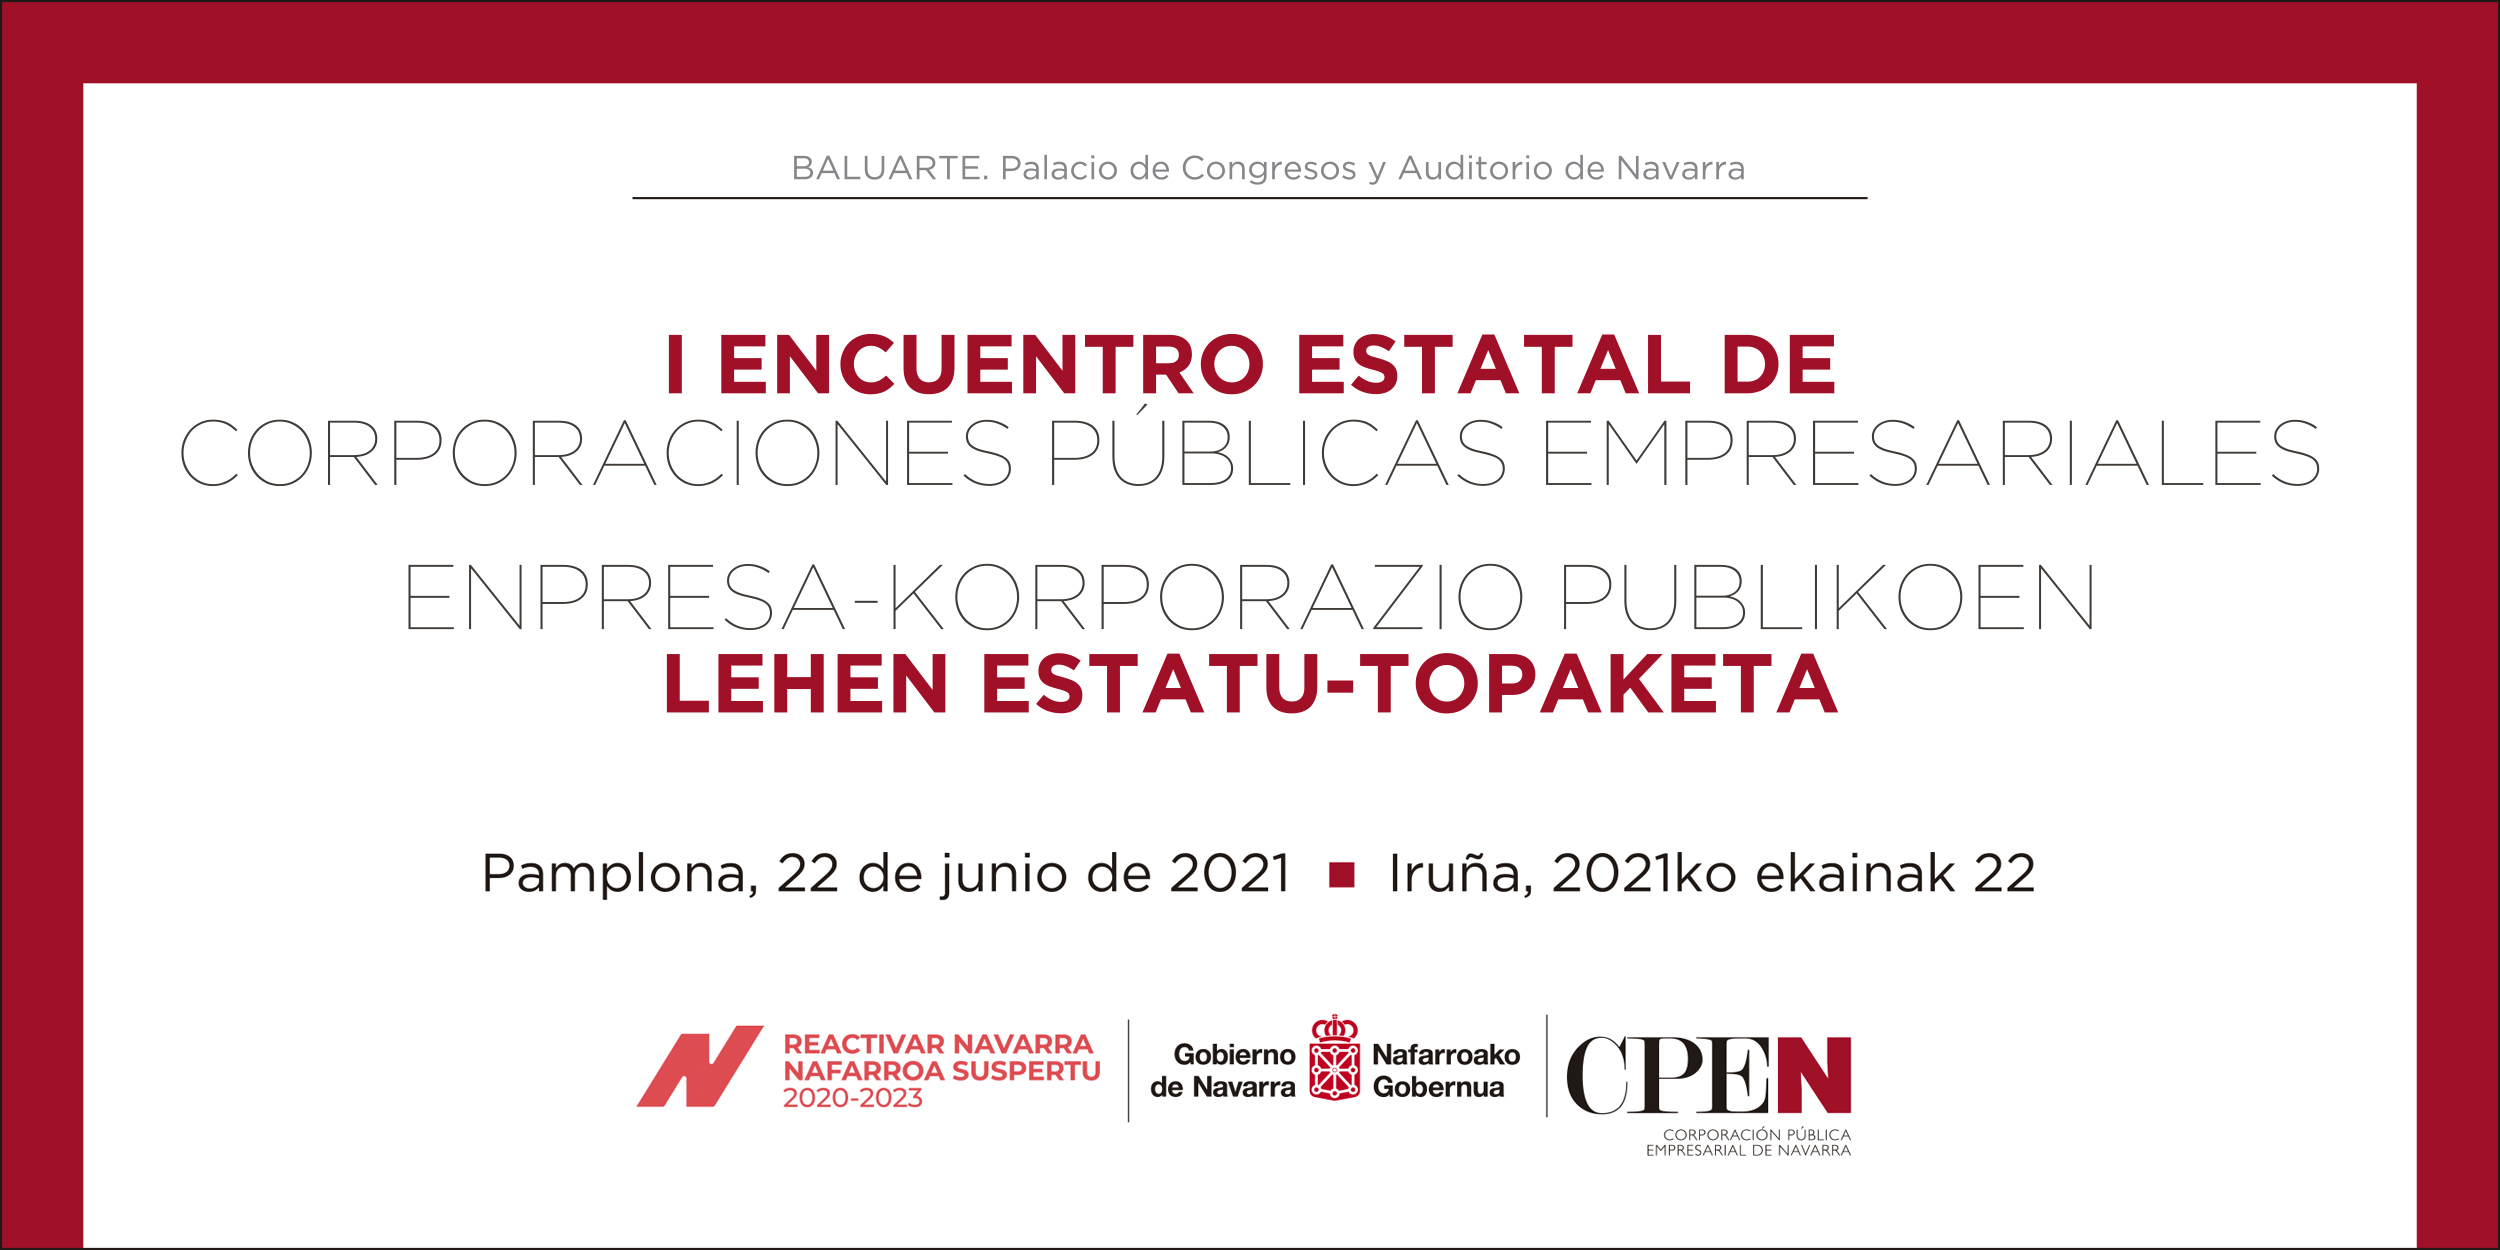 Imagen corporativa del Encuentro, en la que se leen título de la jornada, lugar y logotipos de CPEN, Gobierno de Navarra y Plan Reactivar Navarra.